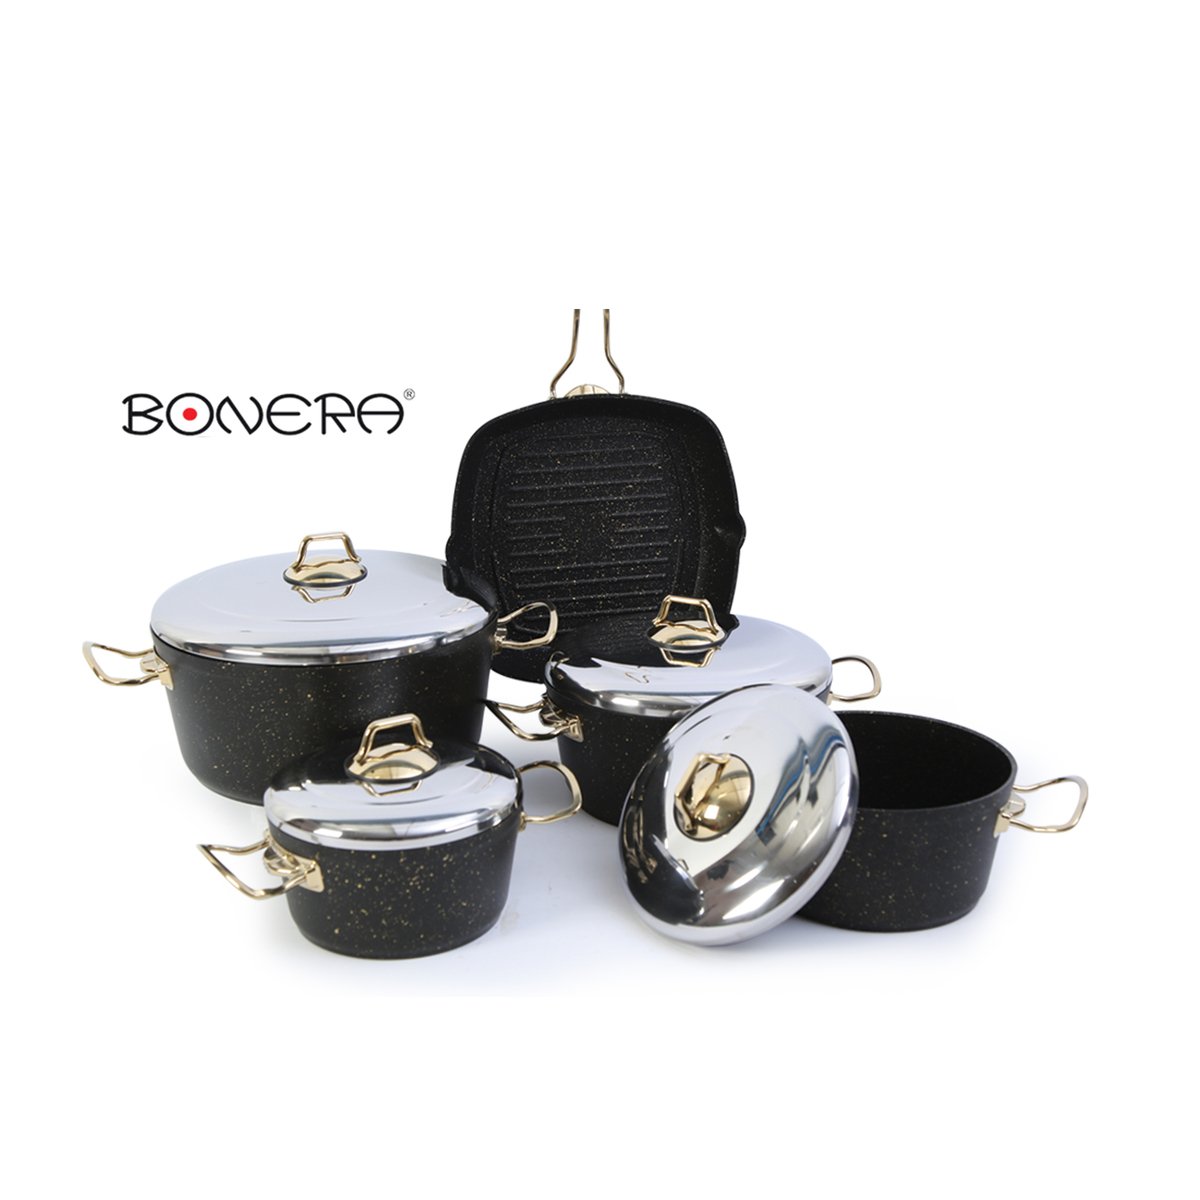 Bonera Cookware Set Ideal Griller 9pcs Assorted